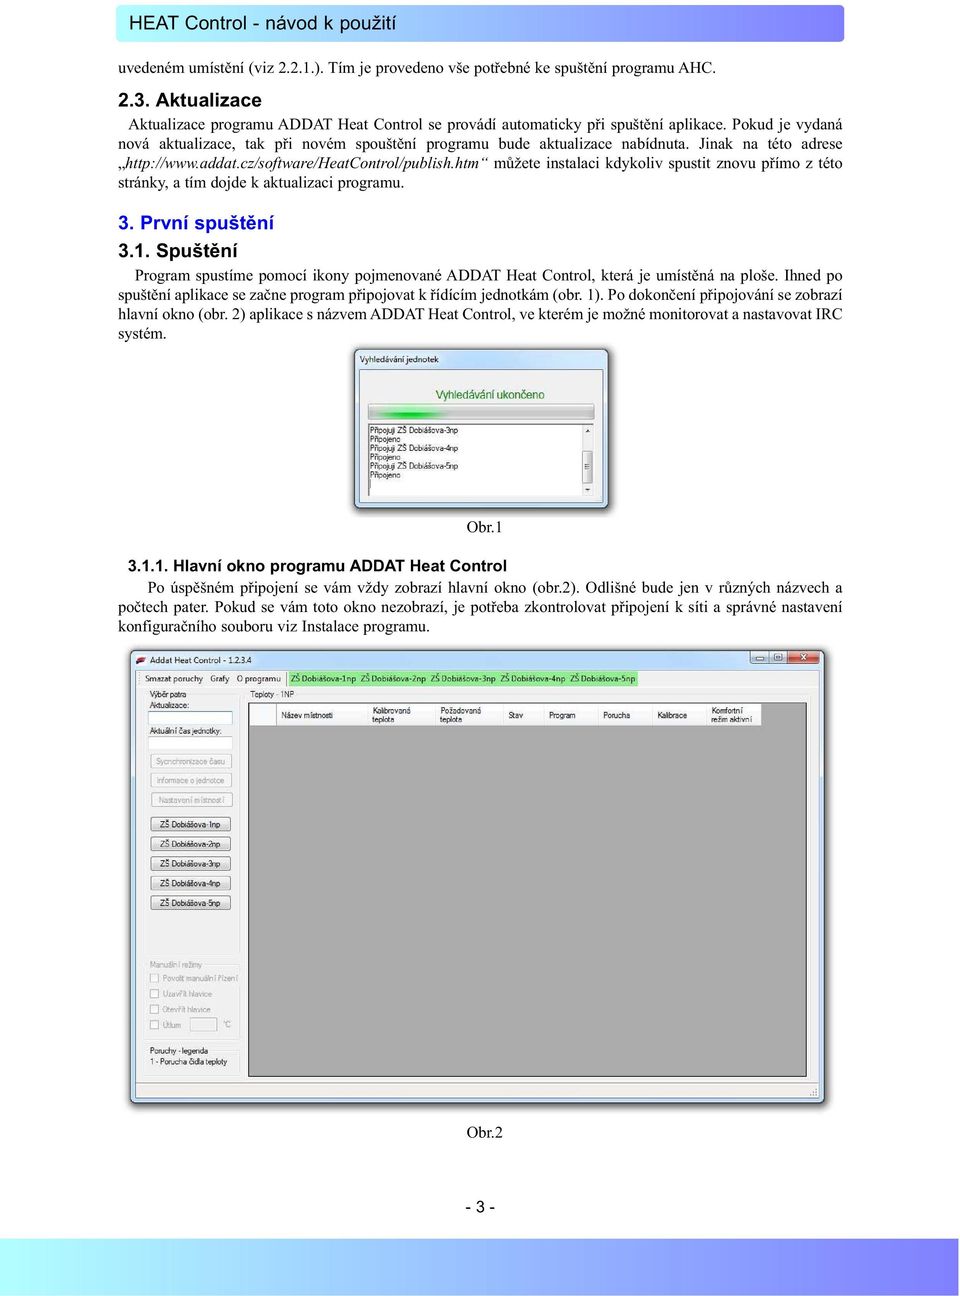 htm můžete instalaci kdykoliv spustit znovu přímo z této stránky, a tím dojde k aktualizaci programu. 3. První spuštění 3.1.